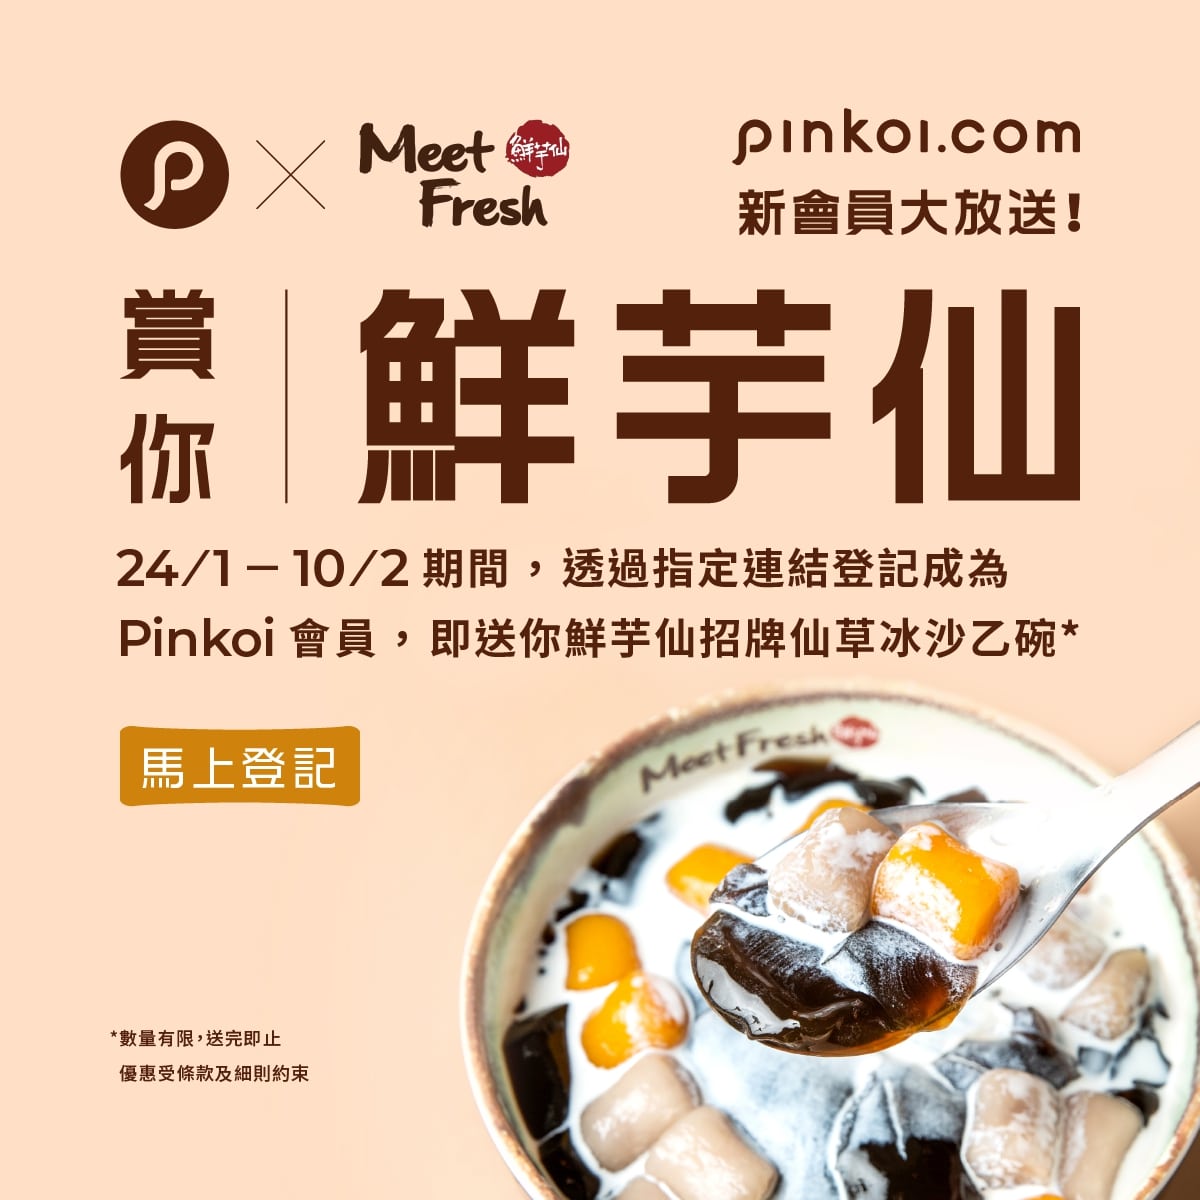 免費登記 Pinkoi 新會員 送鮮芋仙招牌仙草冰沙